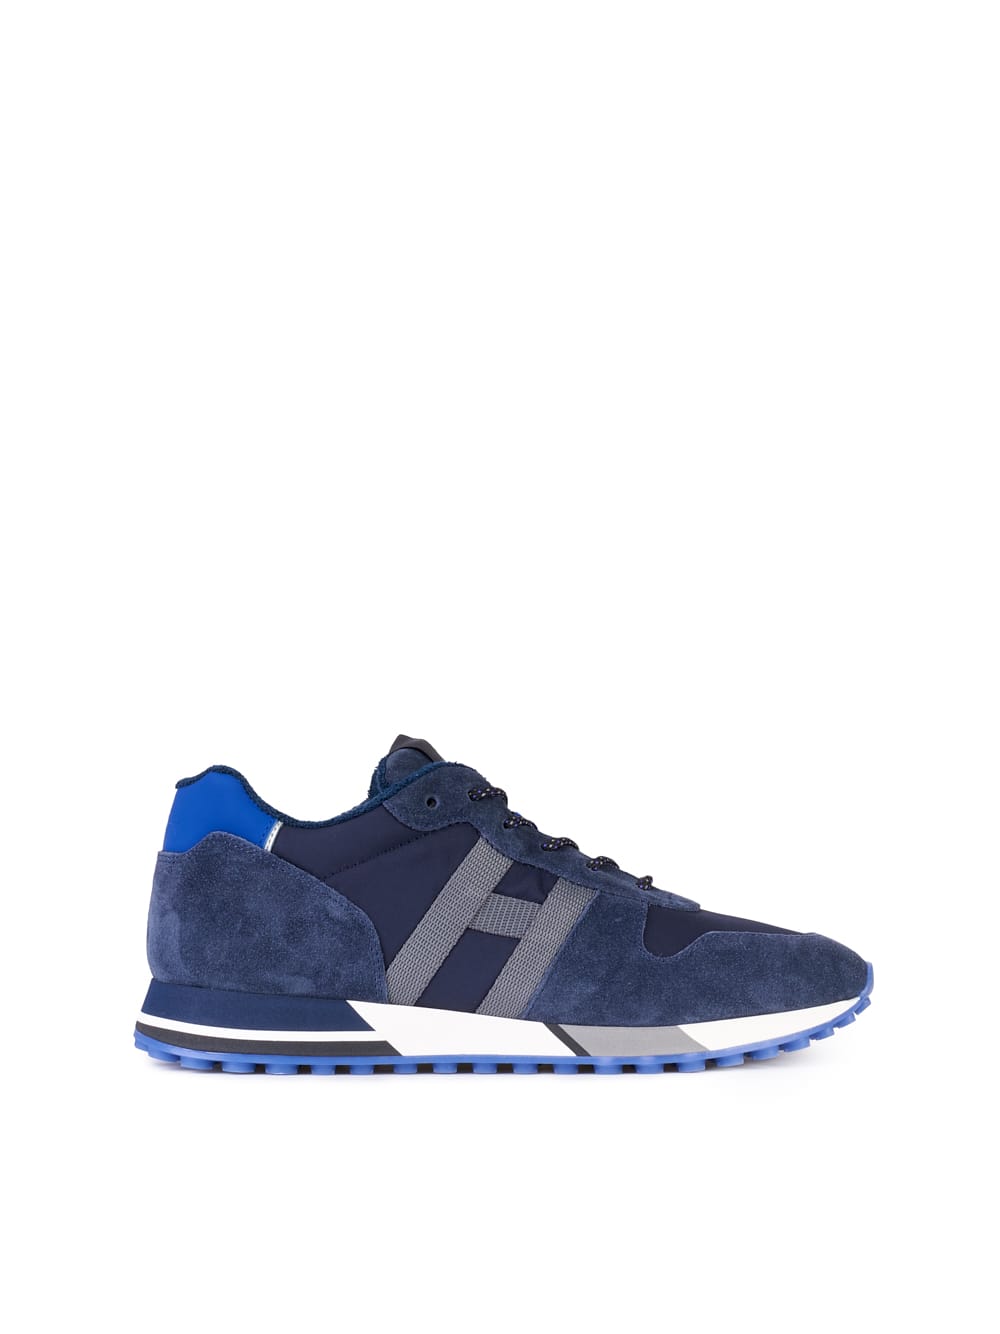 Hogan H383 Sneakers